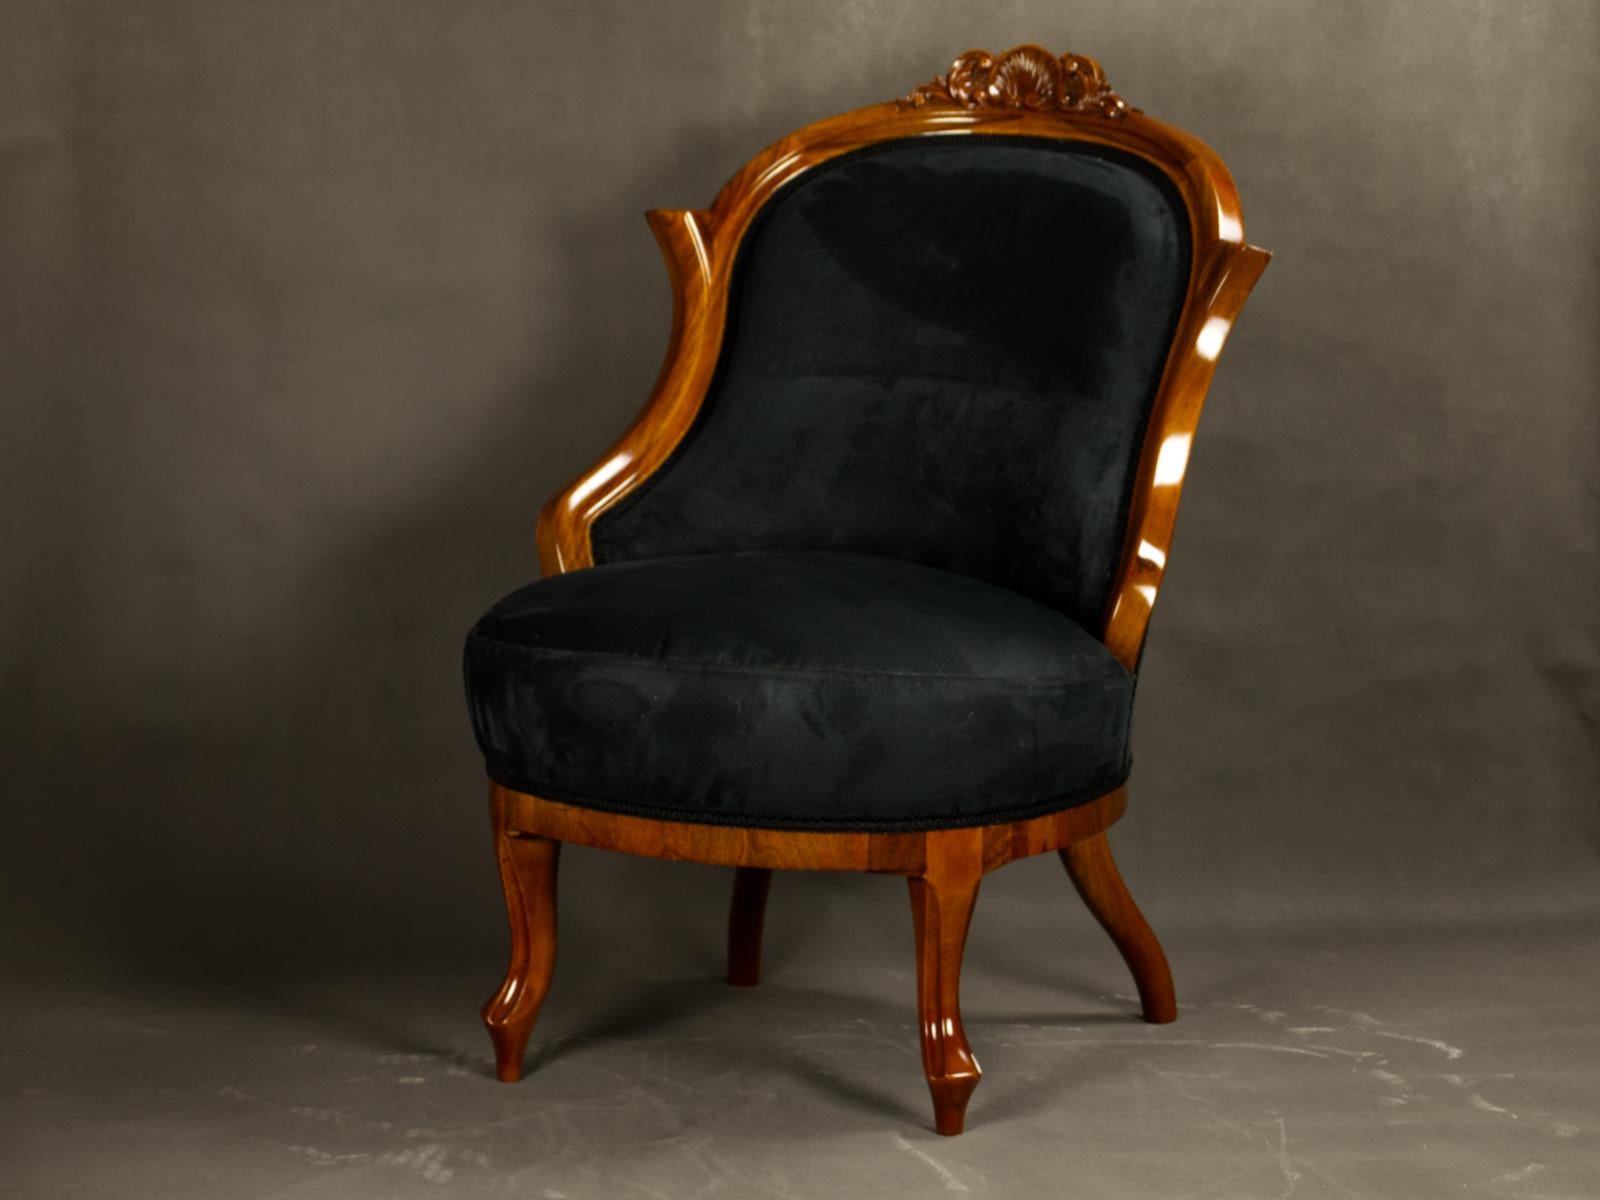 Paar schöne Biedermeier Sessel / Stühle, Mitte 19. Jahrhundert aus Wien, Österreich. Die Rückseiten sind nussbaumfurniert, die Beine aus massivem Nussbaum. Die Stühle sind restauriert und französisch poliert. Neu gepolstert mit schwarzem Stoff. Nach